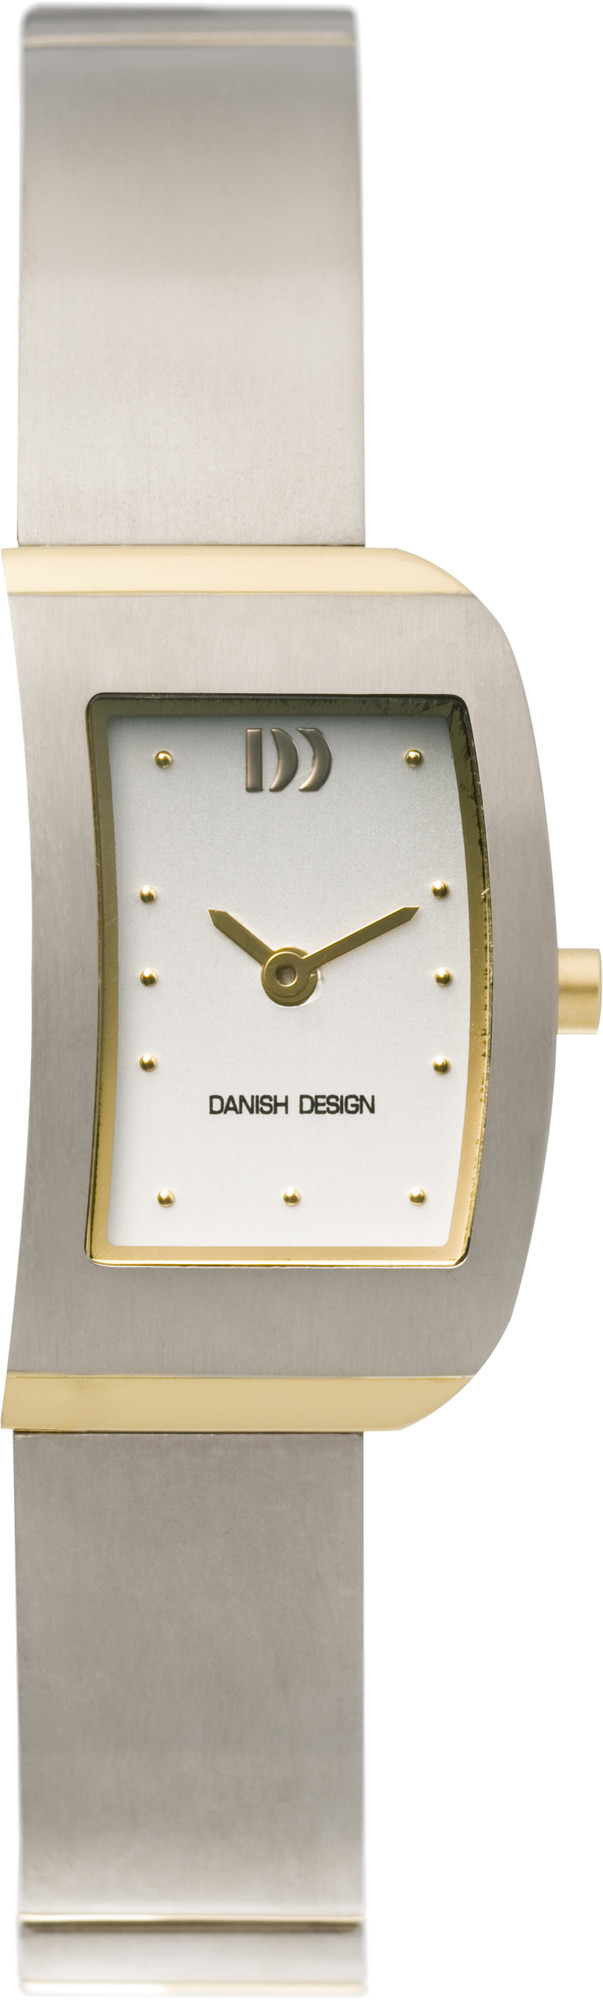 Danish Design Horloge 18/30 mm Titanium IV65Q825 1